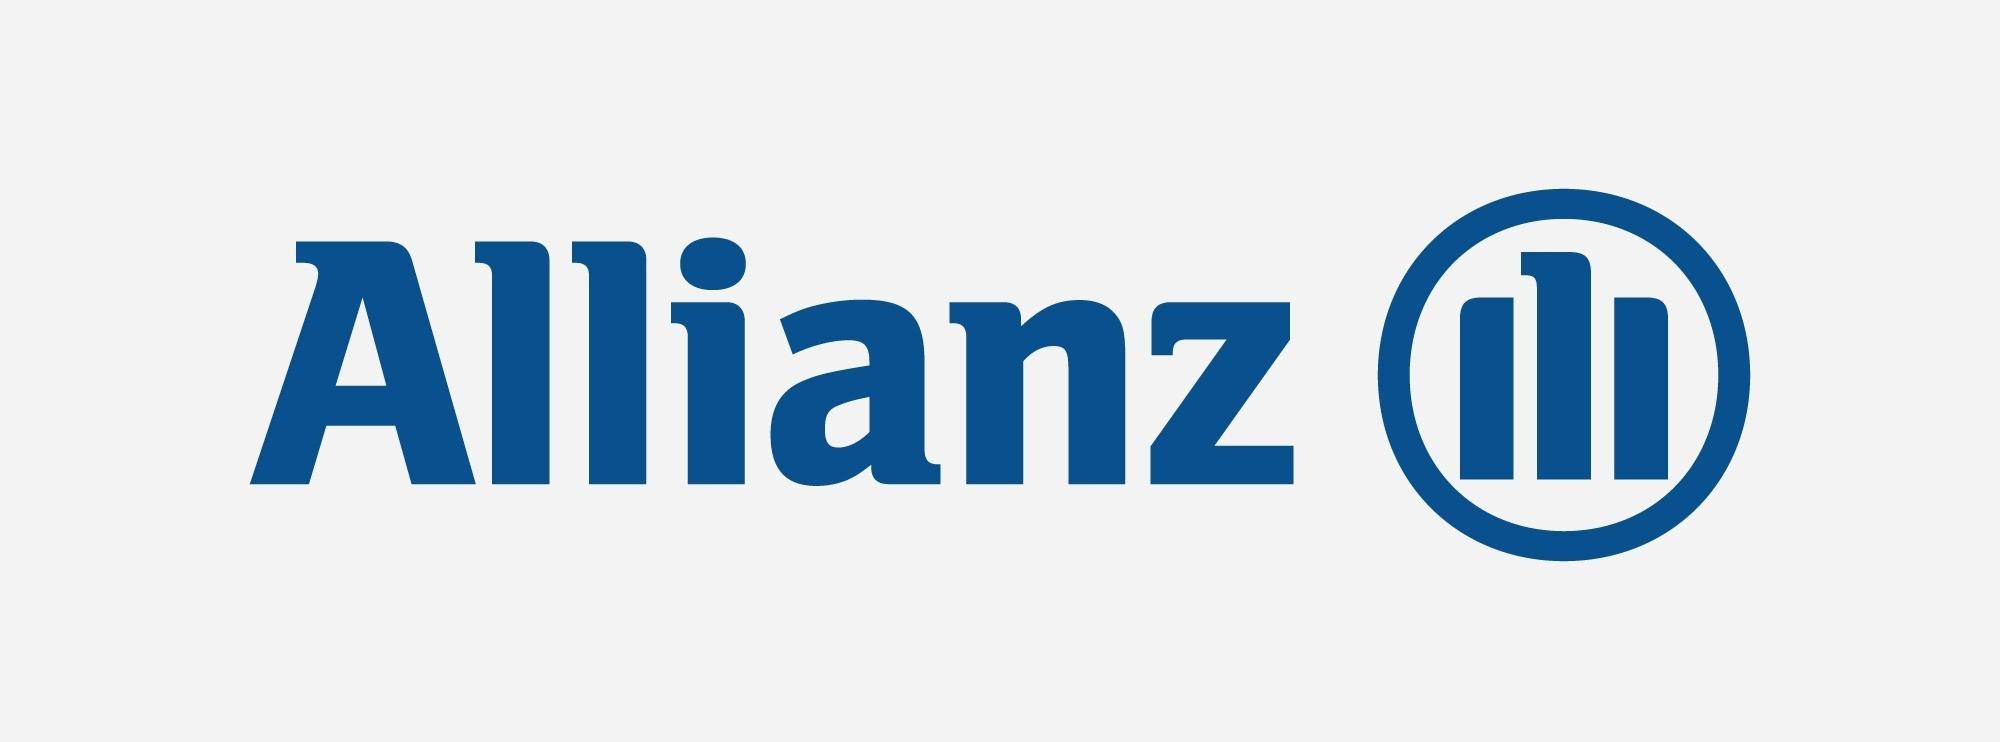 капитализация компании Allianz